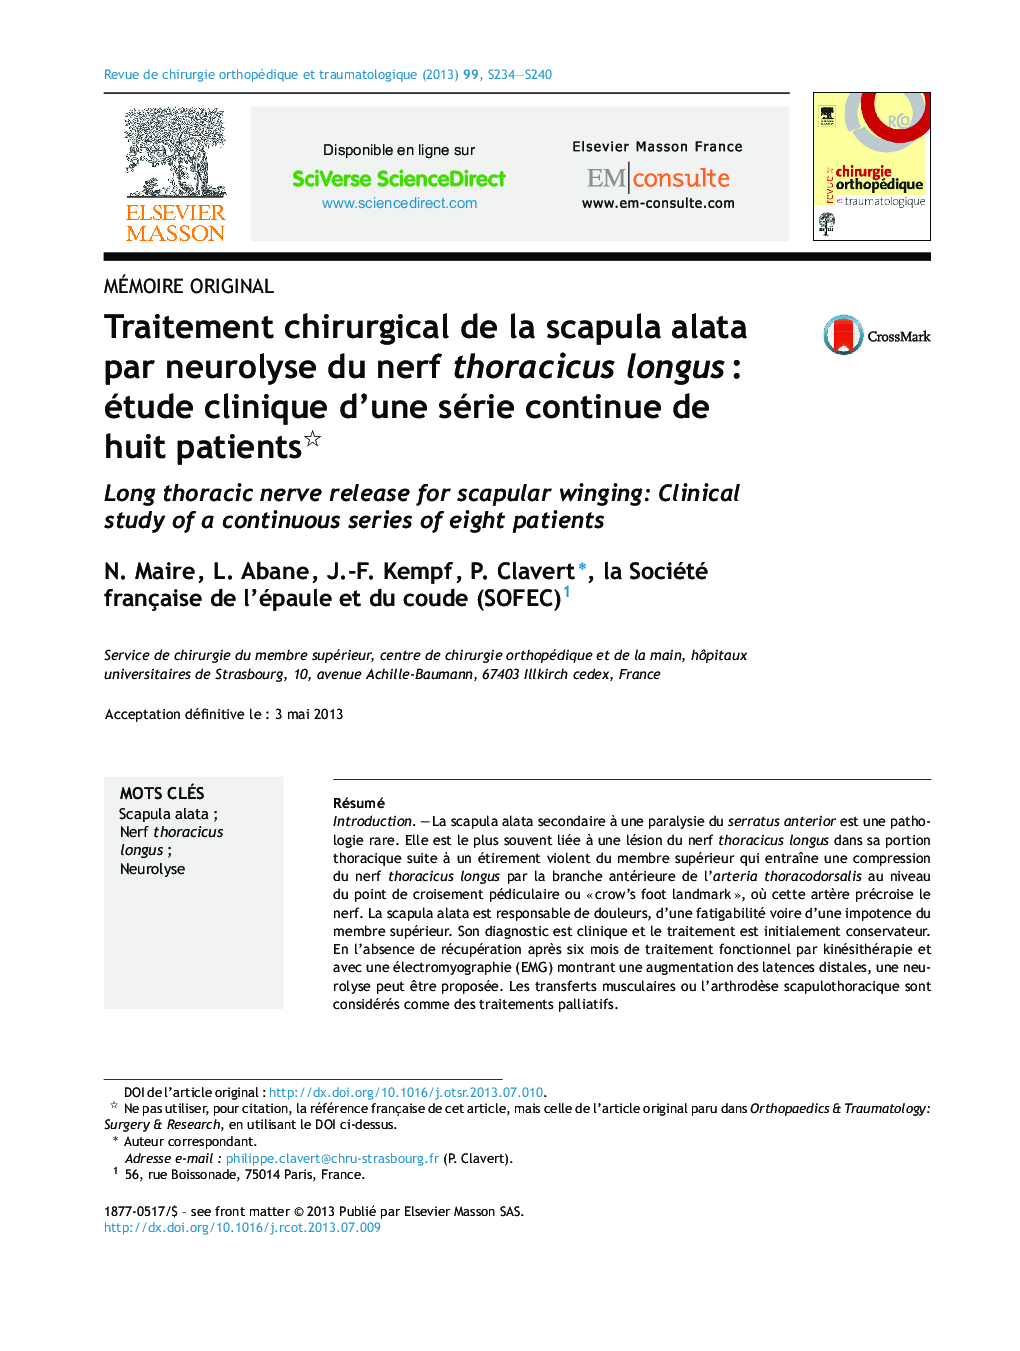 Traitement chirurgical de la scapula alata par neurolyse du nerf thoracicus longus : étude clinique d’une série continue de huit patients 